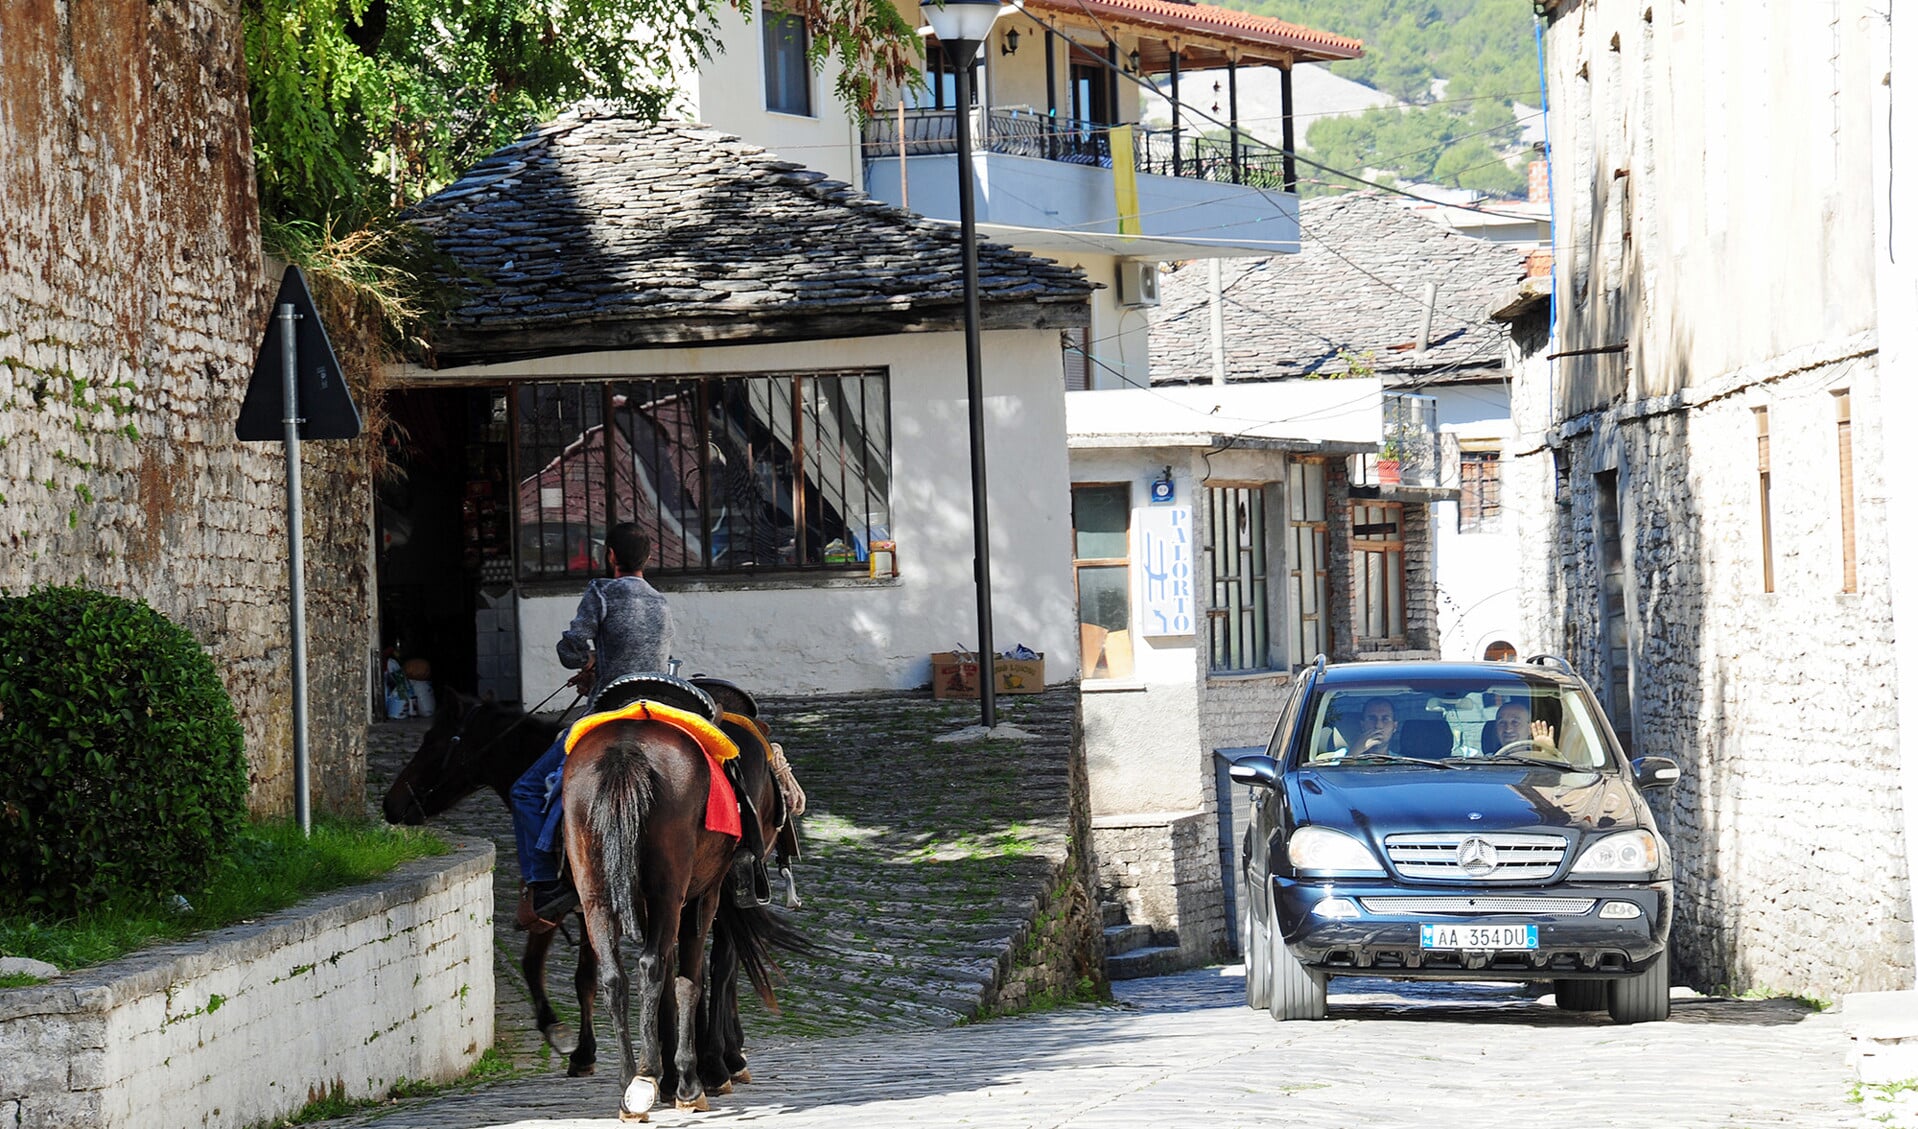 Albanië is een veilig en toeristisch aantrekkelijk land aan het worden. Op de foto: een straatbeeld van de oude stad van Gjirokastër in het zuiden van Albanië, die de status heeft van werelderfgoed.